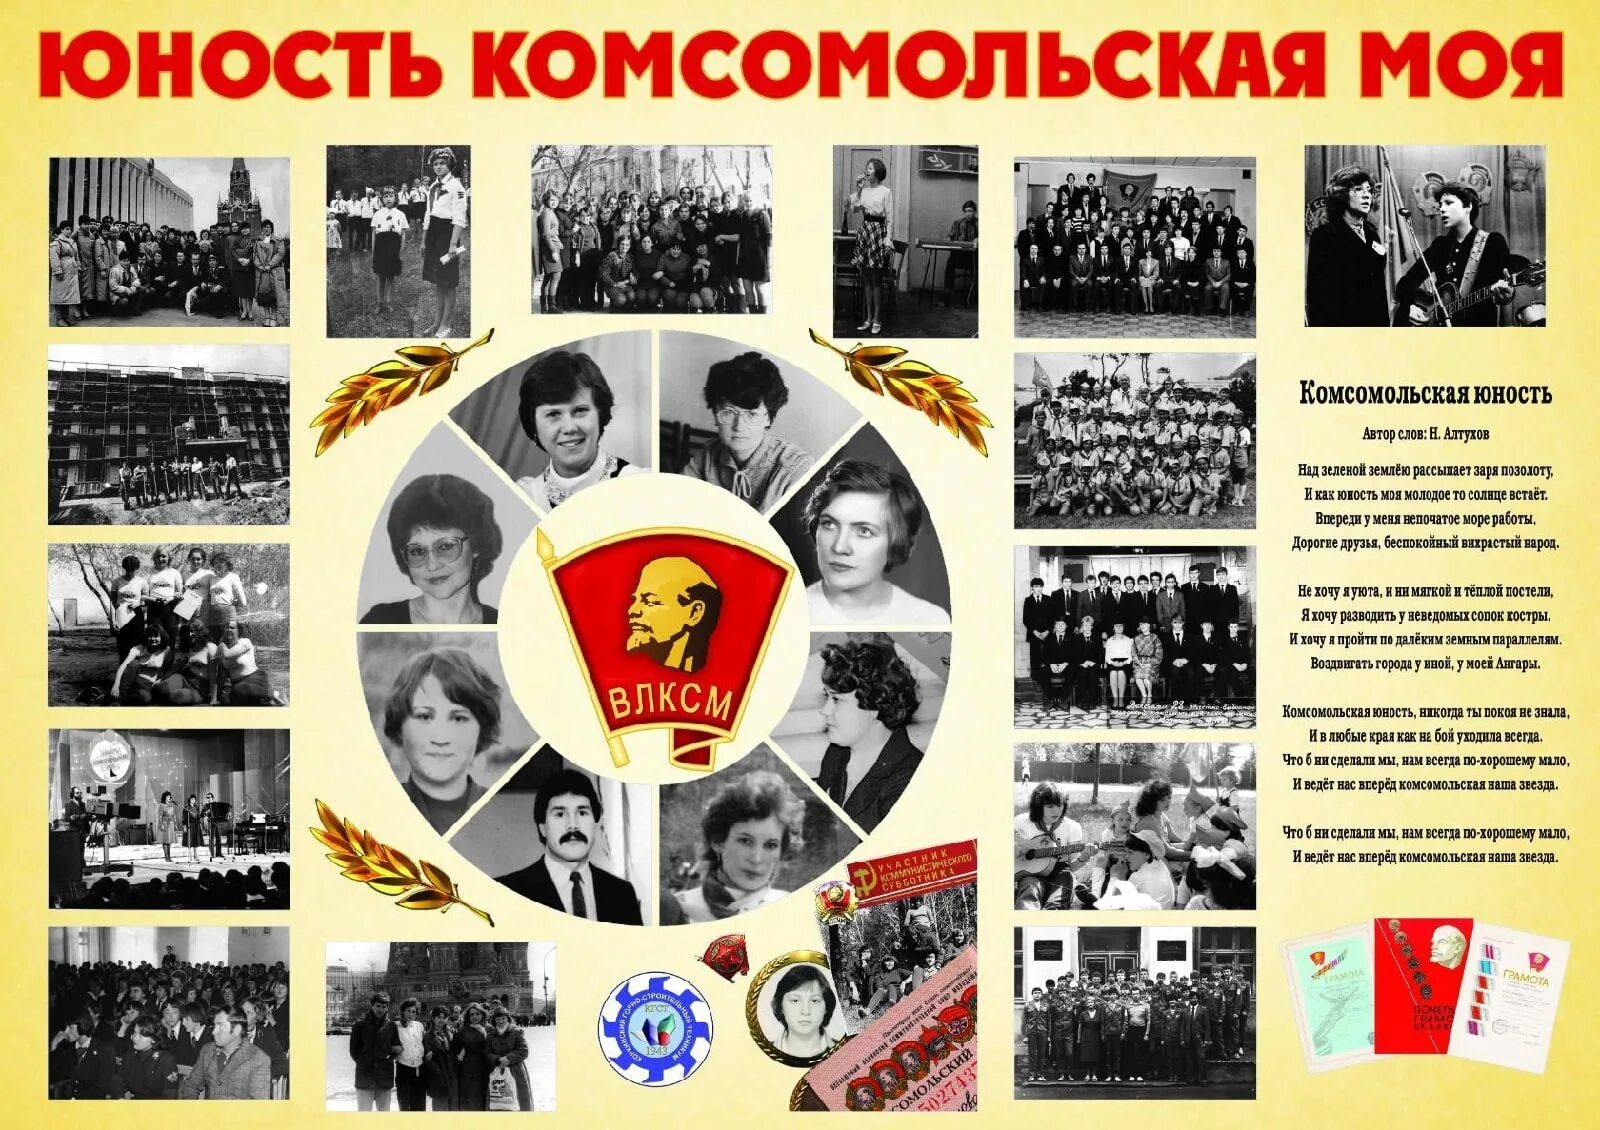 Юность Комсомольская моя. Комсомол это Юность моя. Комсомол организация. Комсомол молодость моя.